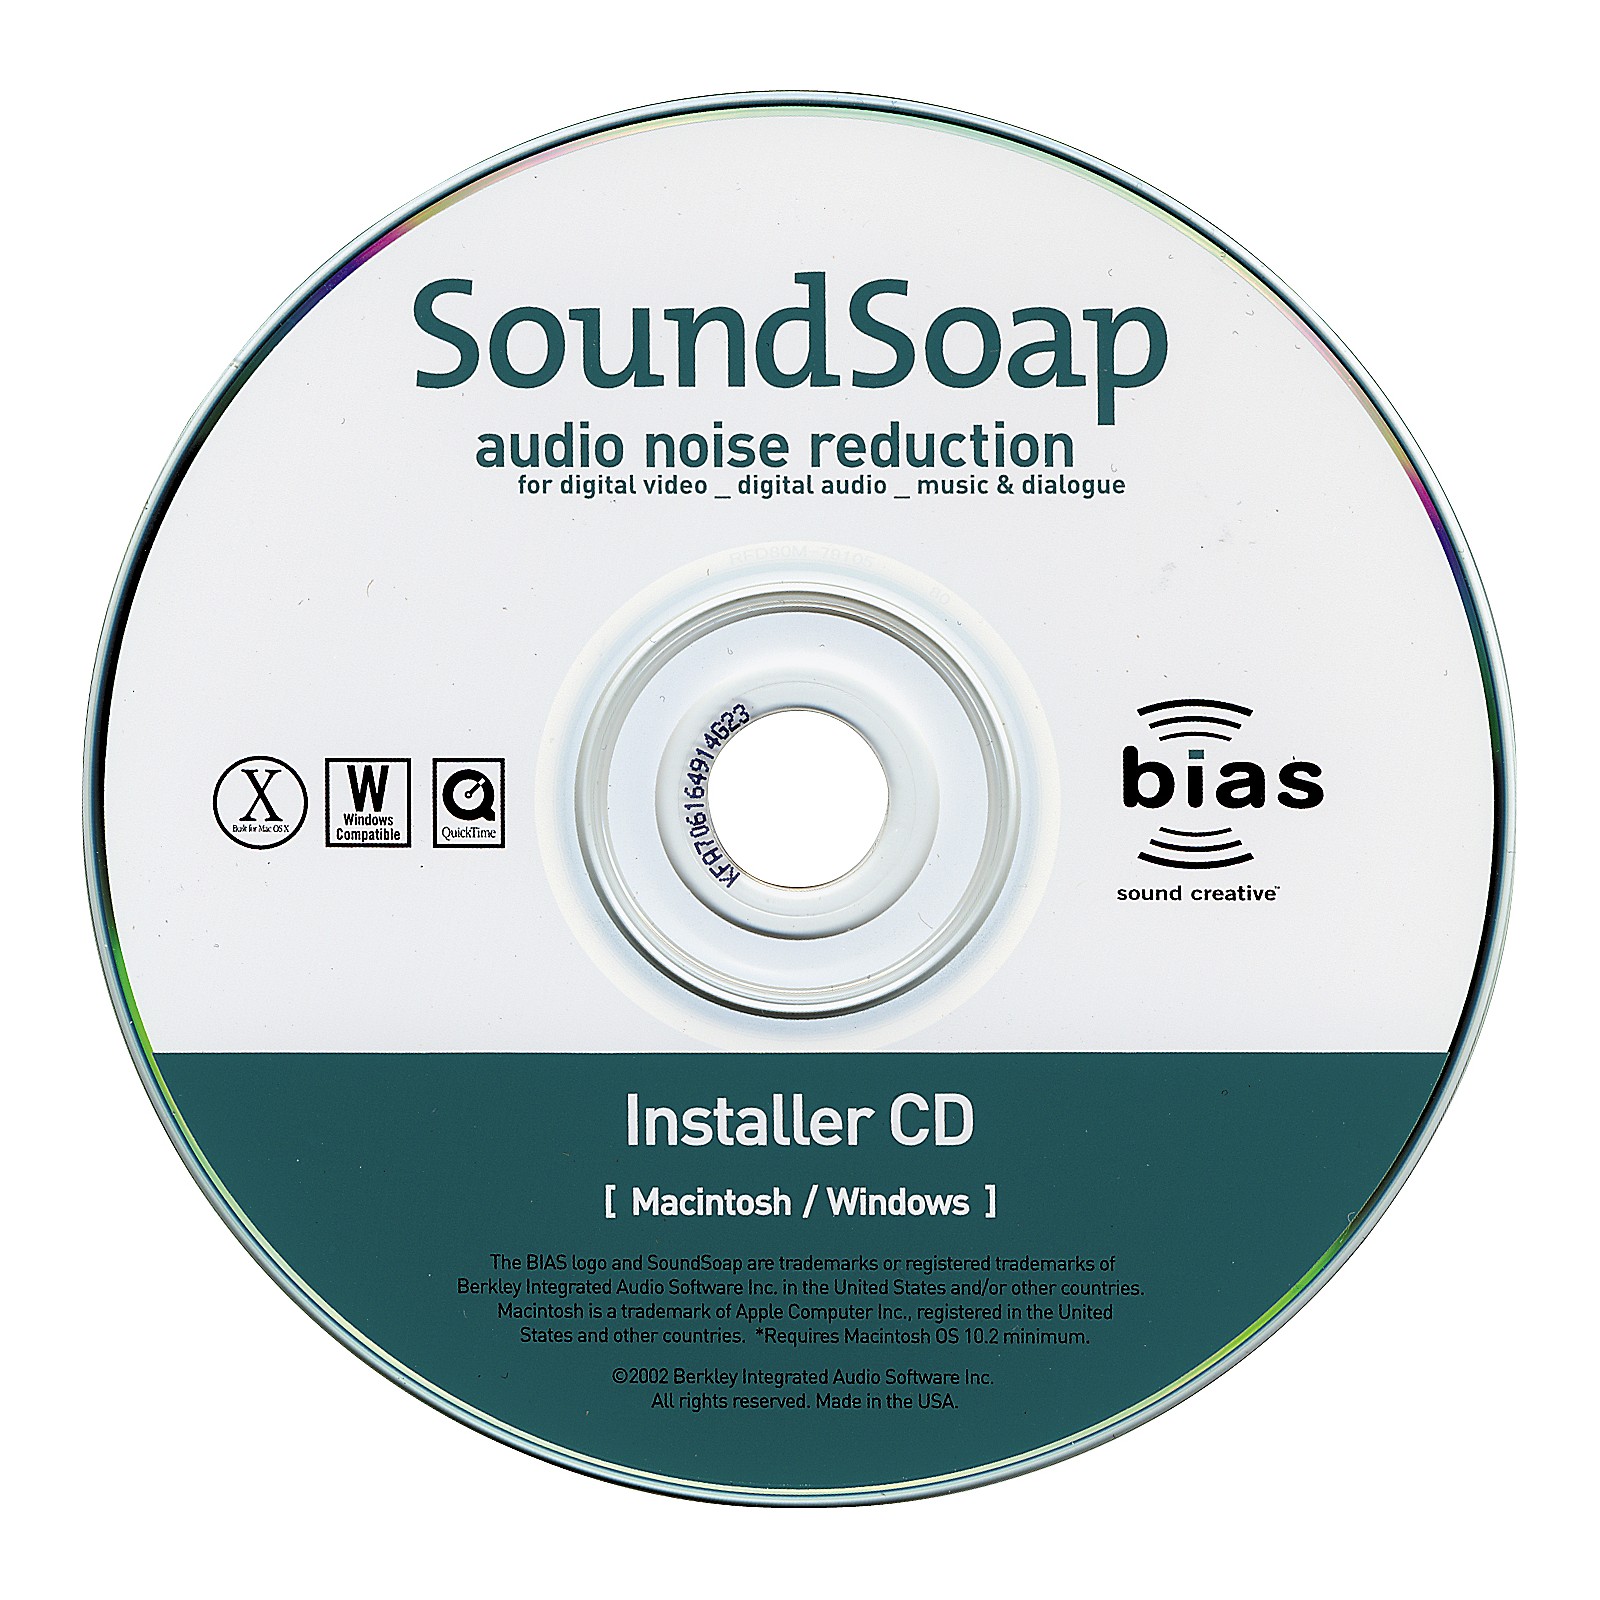 soundsoap review